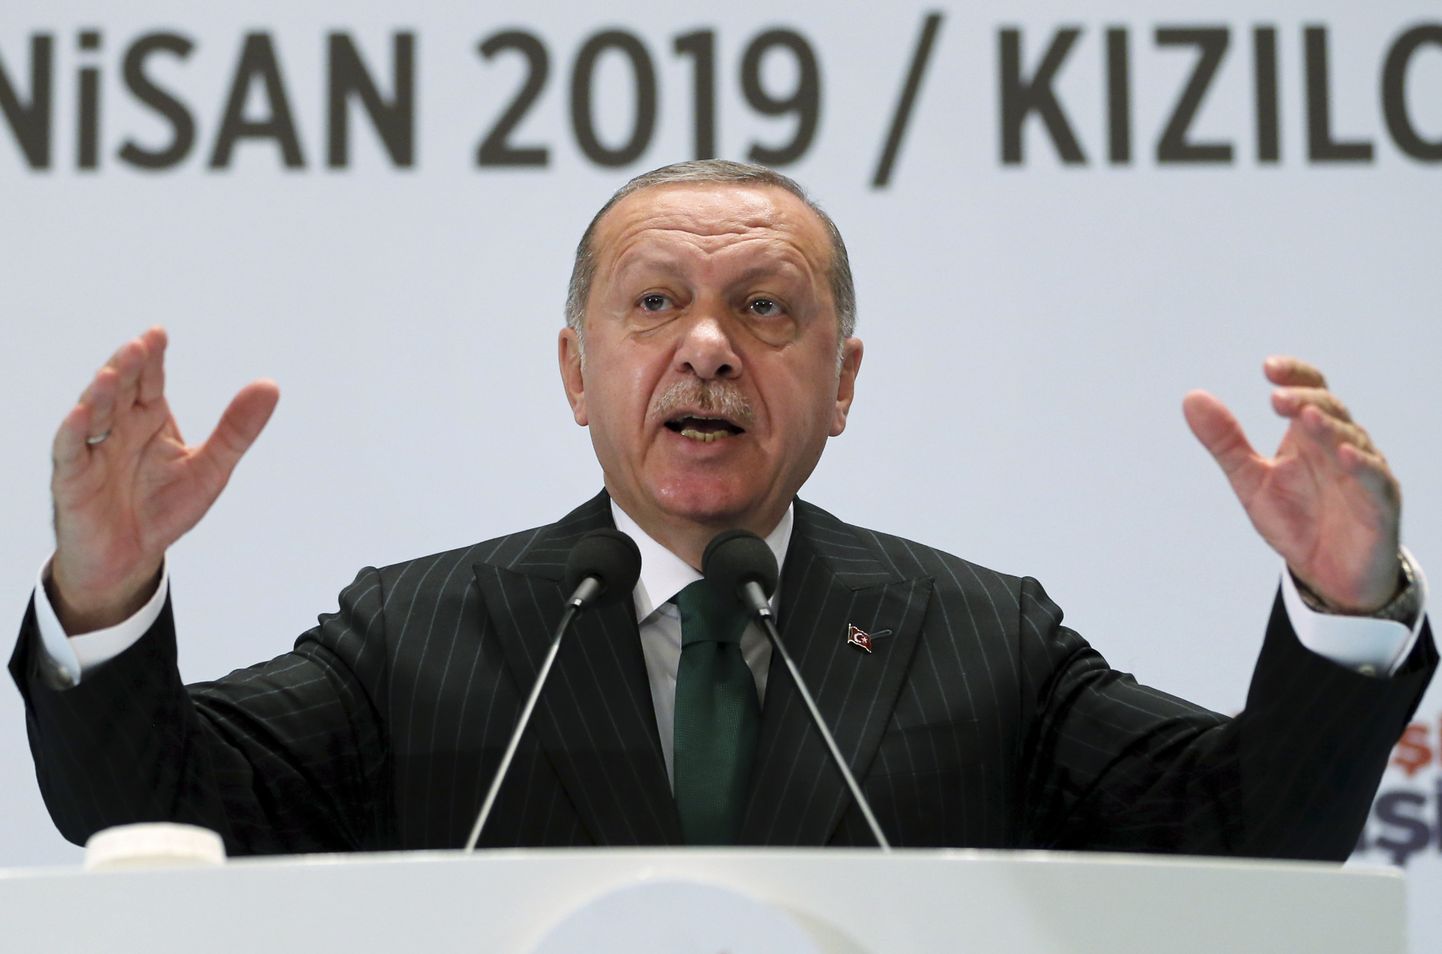 Türgi president Recep Tayyip Erdoğan laupäeval riigi põhjaosas Kizilcahamamis oma erakonna Õigluse ja Arengu Partei (AKP) kohtumisel.